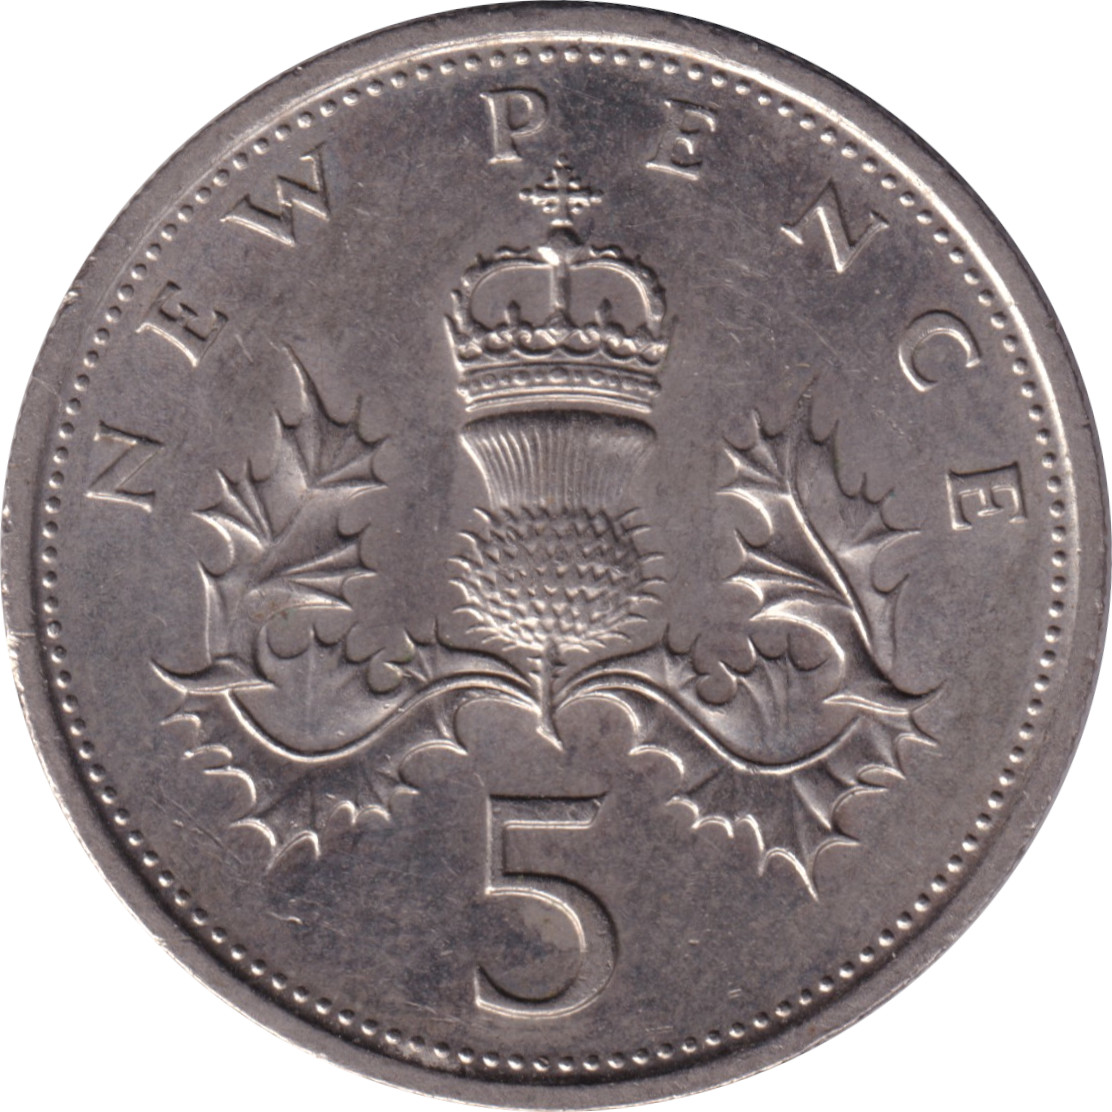 5 pence - Elizabeth II - Young bust